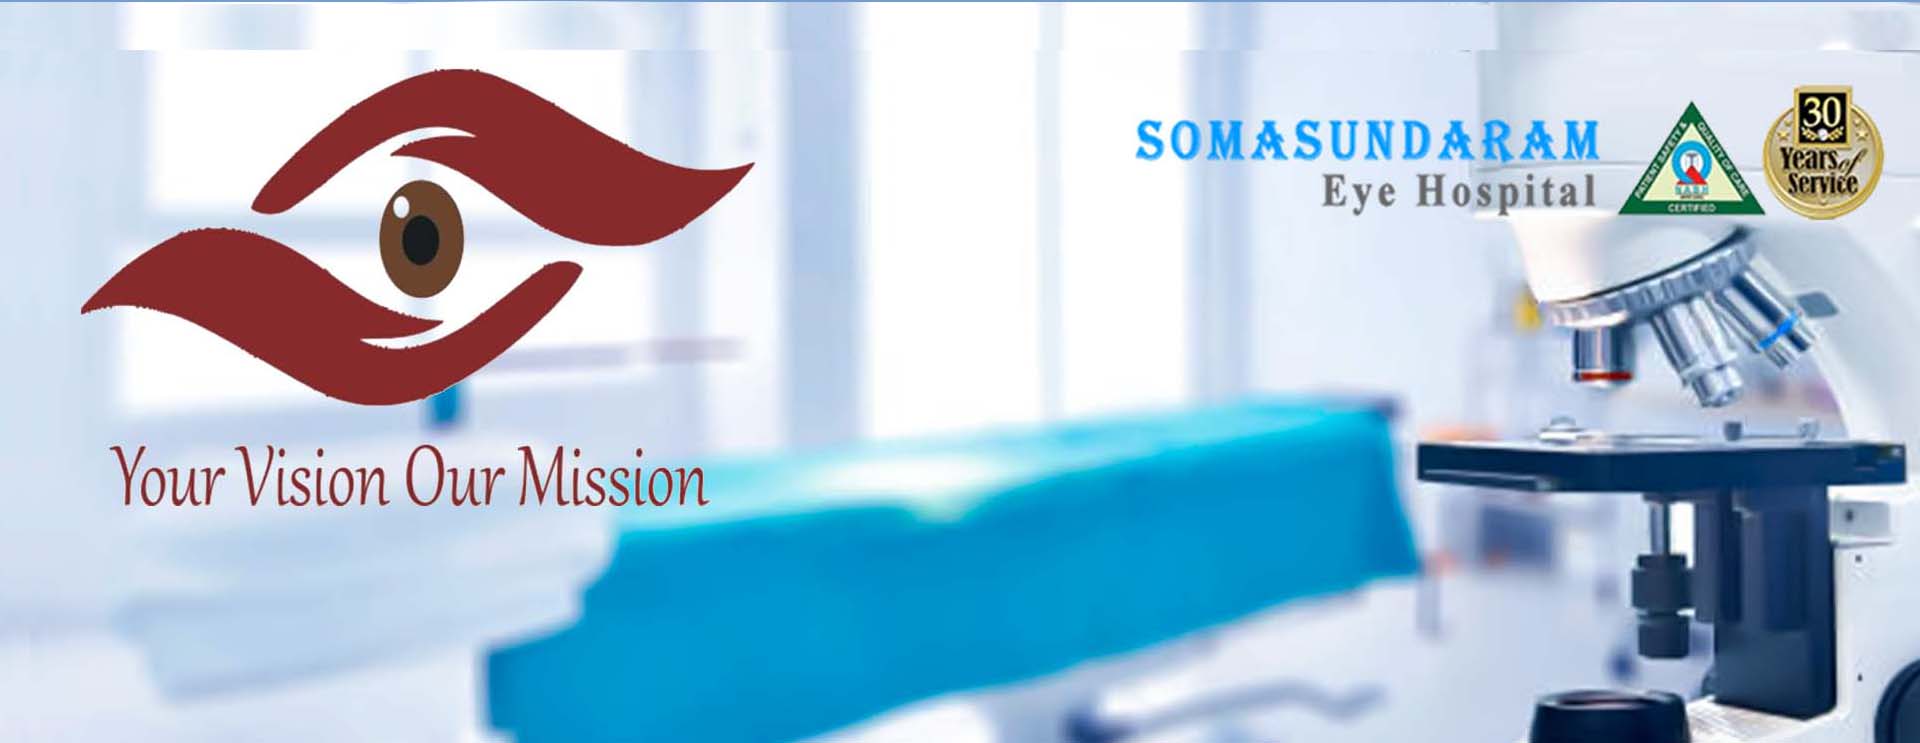 Somasundaram eye hospital